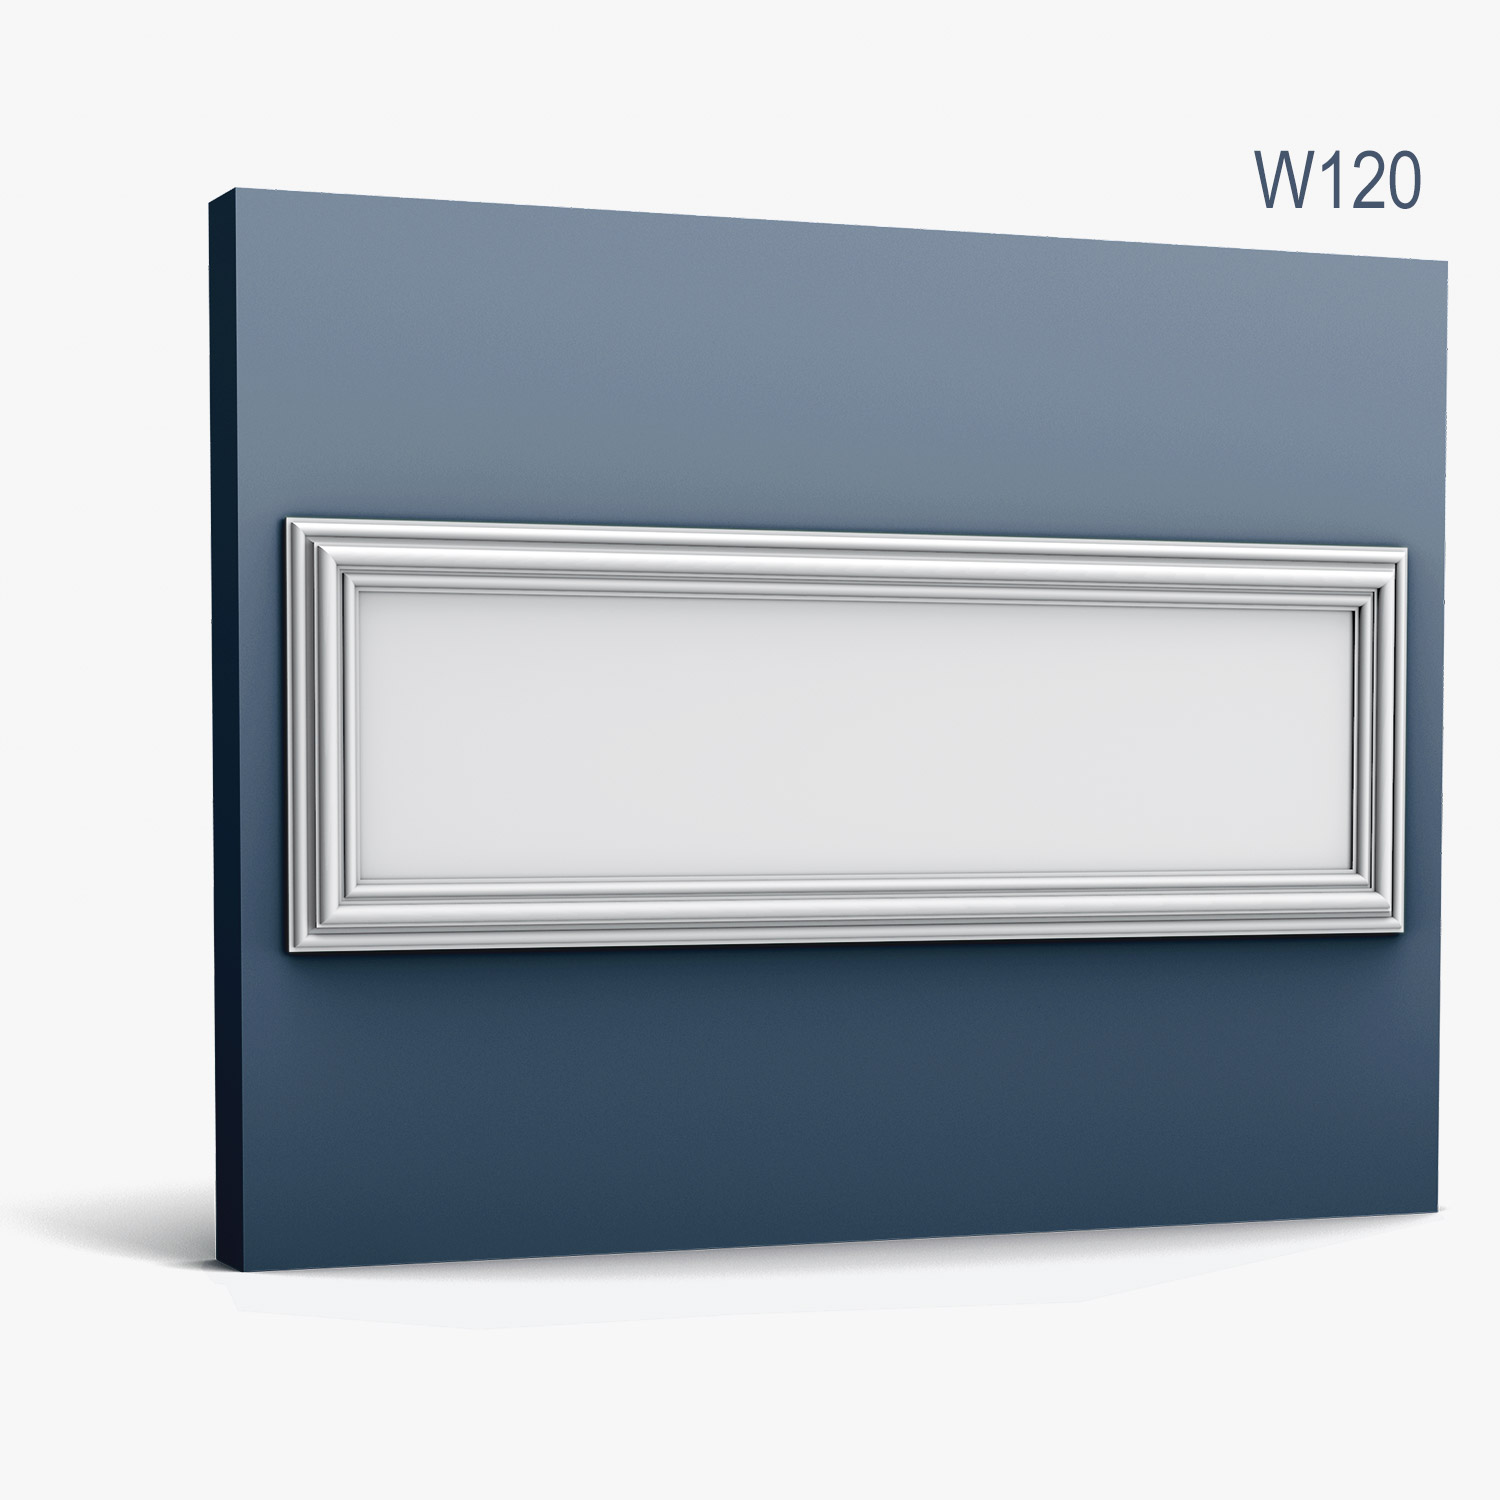 Panel Modern W120, Dimensiuni: 150 X 50 X 3.2 cm, Orac Decor